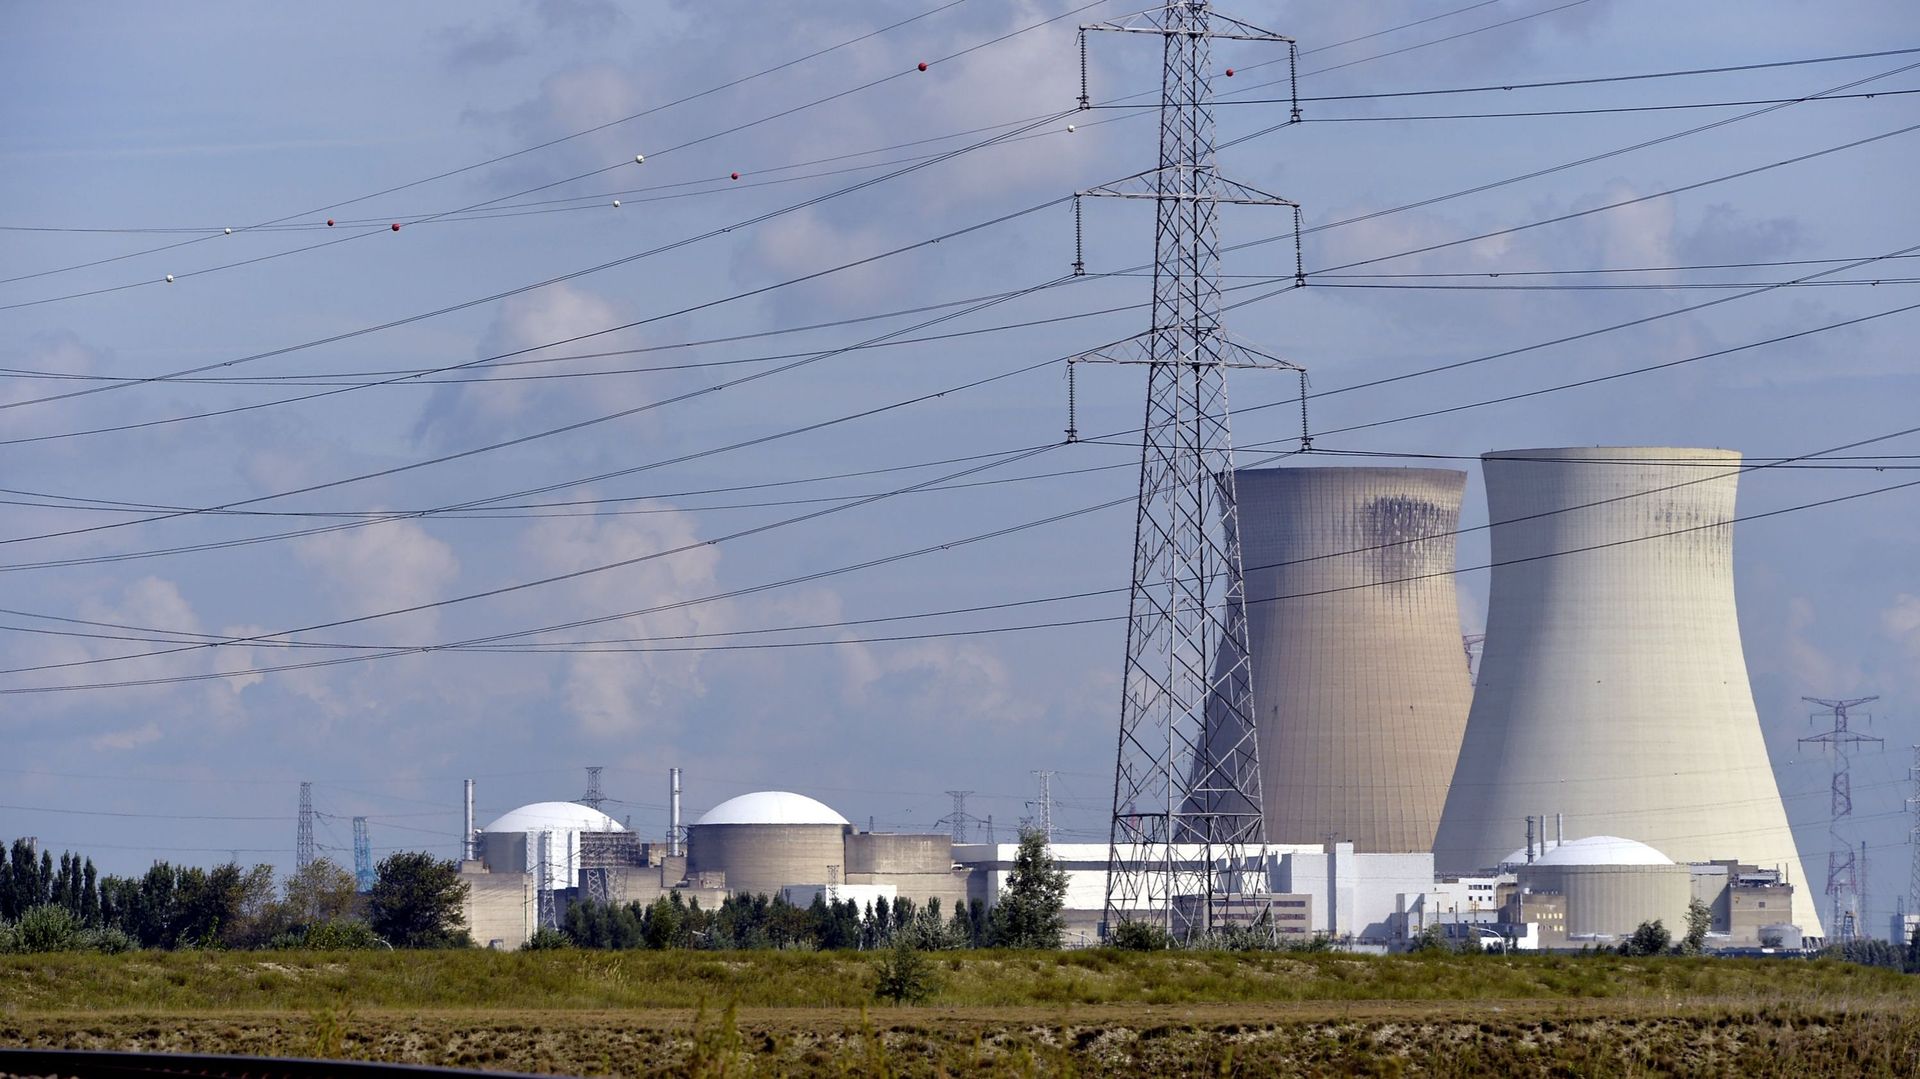 Engi sul rifiuto di estendere i reattori Doel 3 e Tihange 2: “Non abbiamo consigliato il carburante”